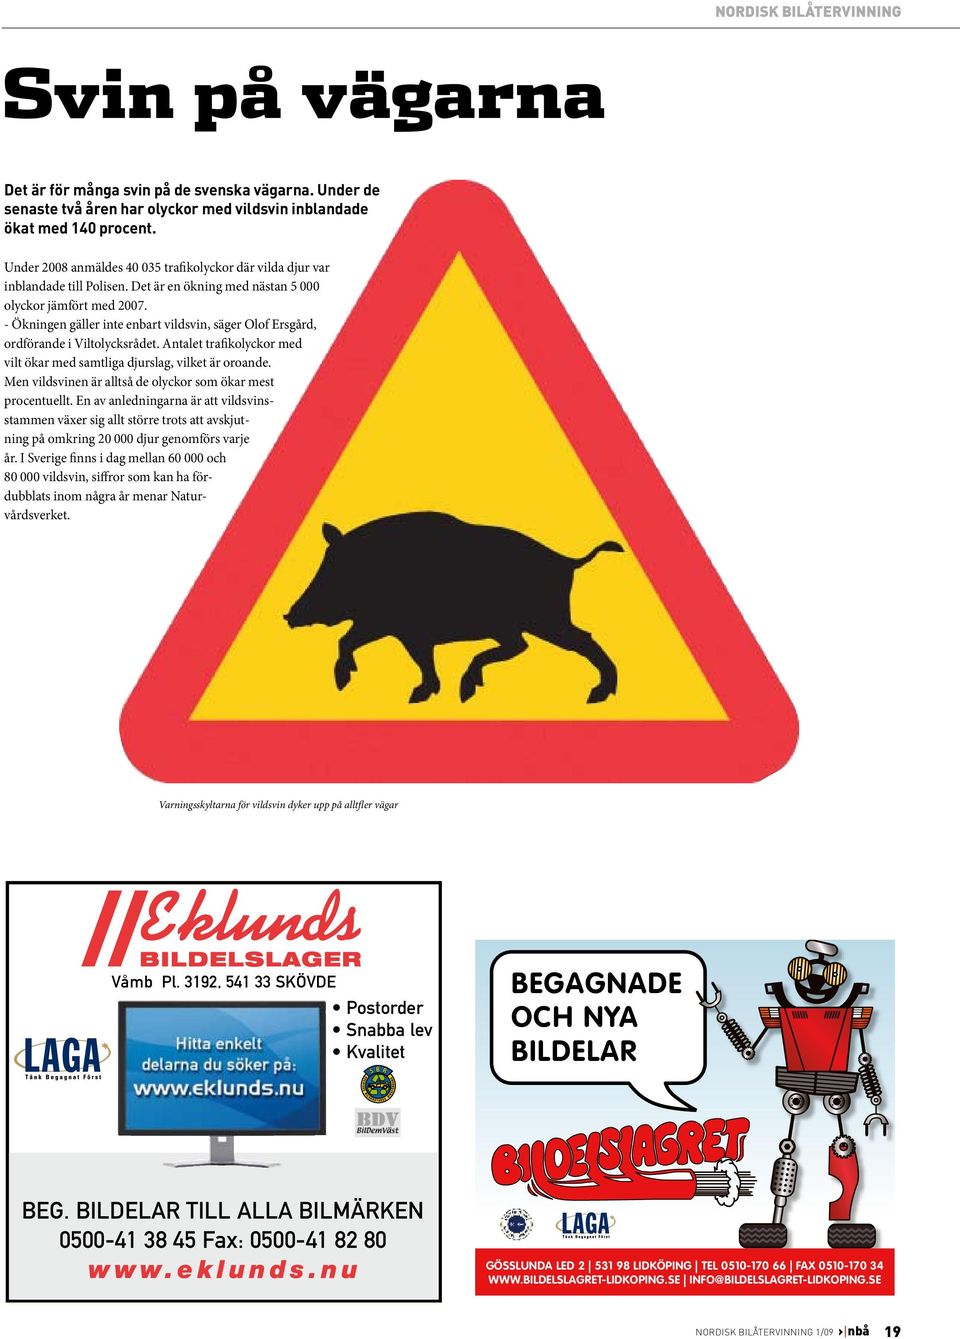 Det är en ökning med nästan 5 000 olyckor jämfört med 2007. - Ökningen gäller inte enbart vildsvin, säger Olof Ersgård, ordförande i Viltolycksrådet.